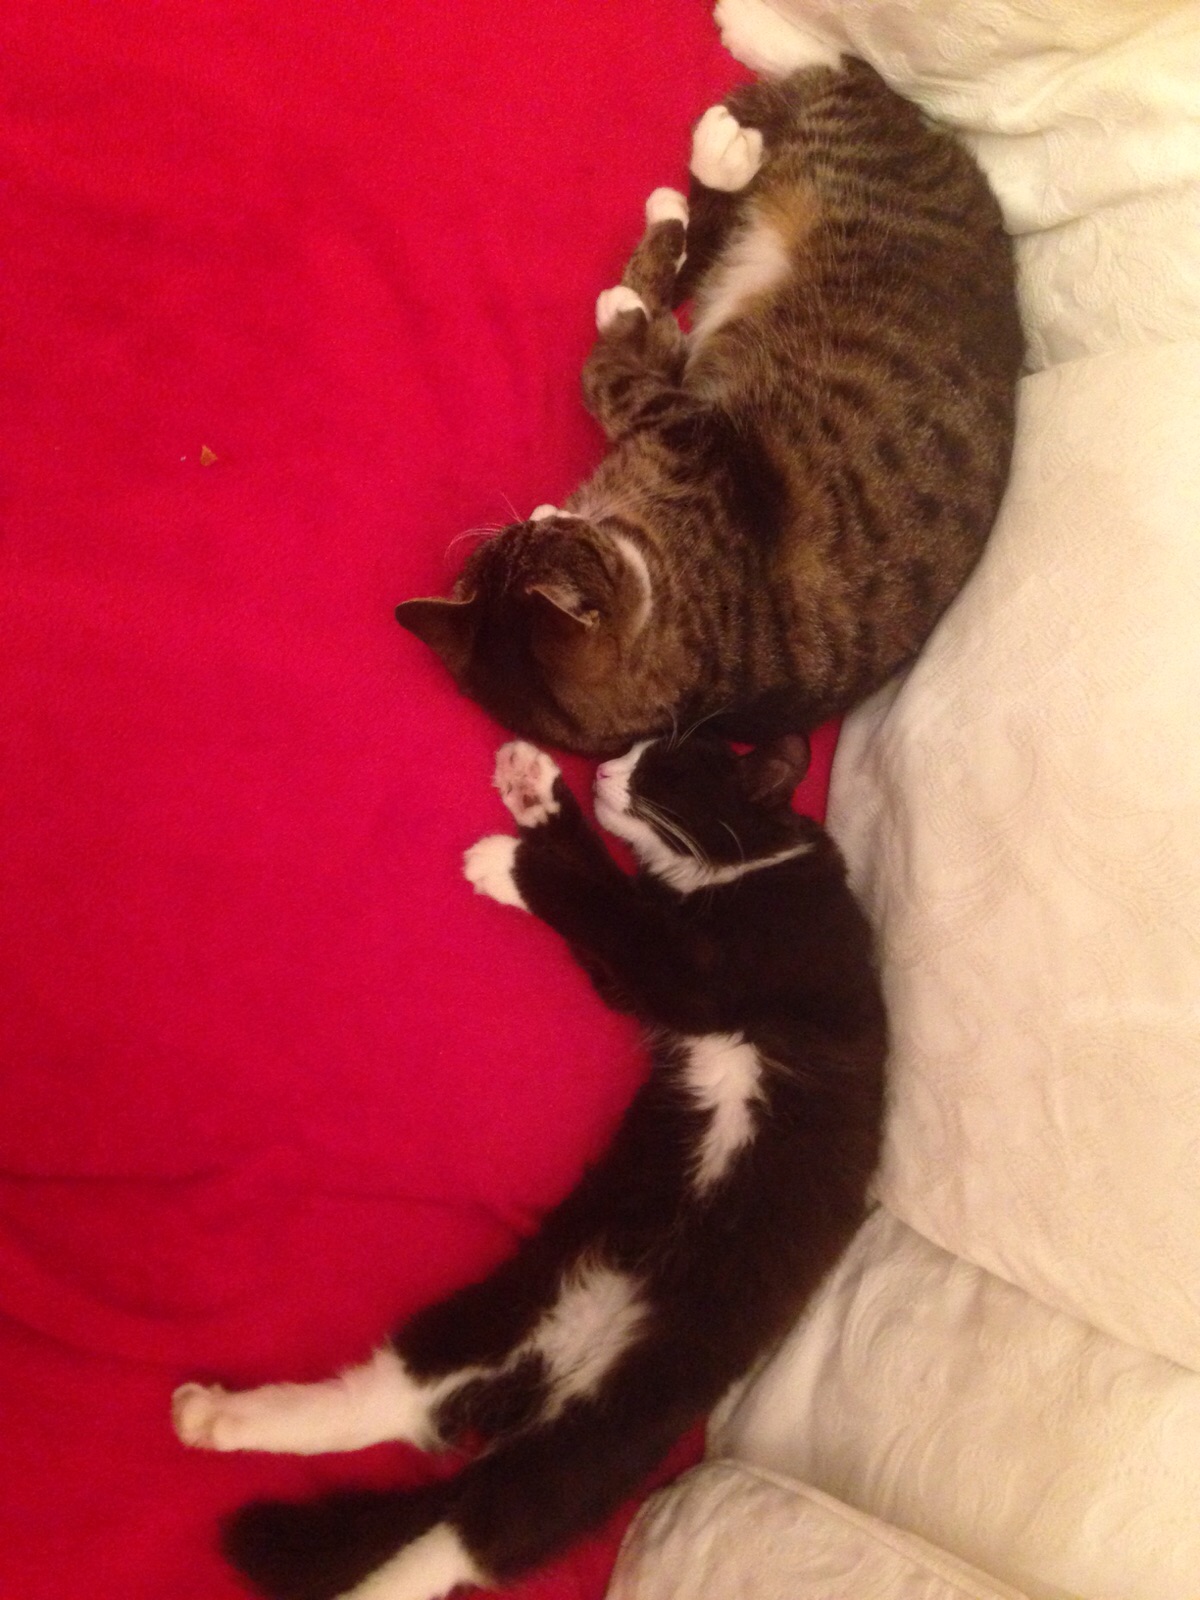 sleeping_cat_and_kitten_by_lightningtremlett-d91ibgd.jpg